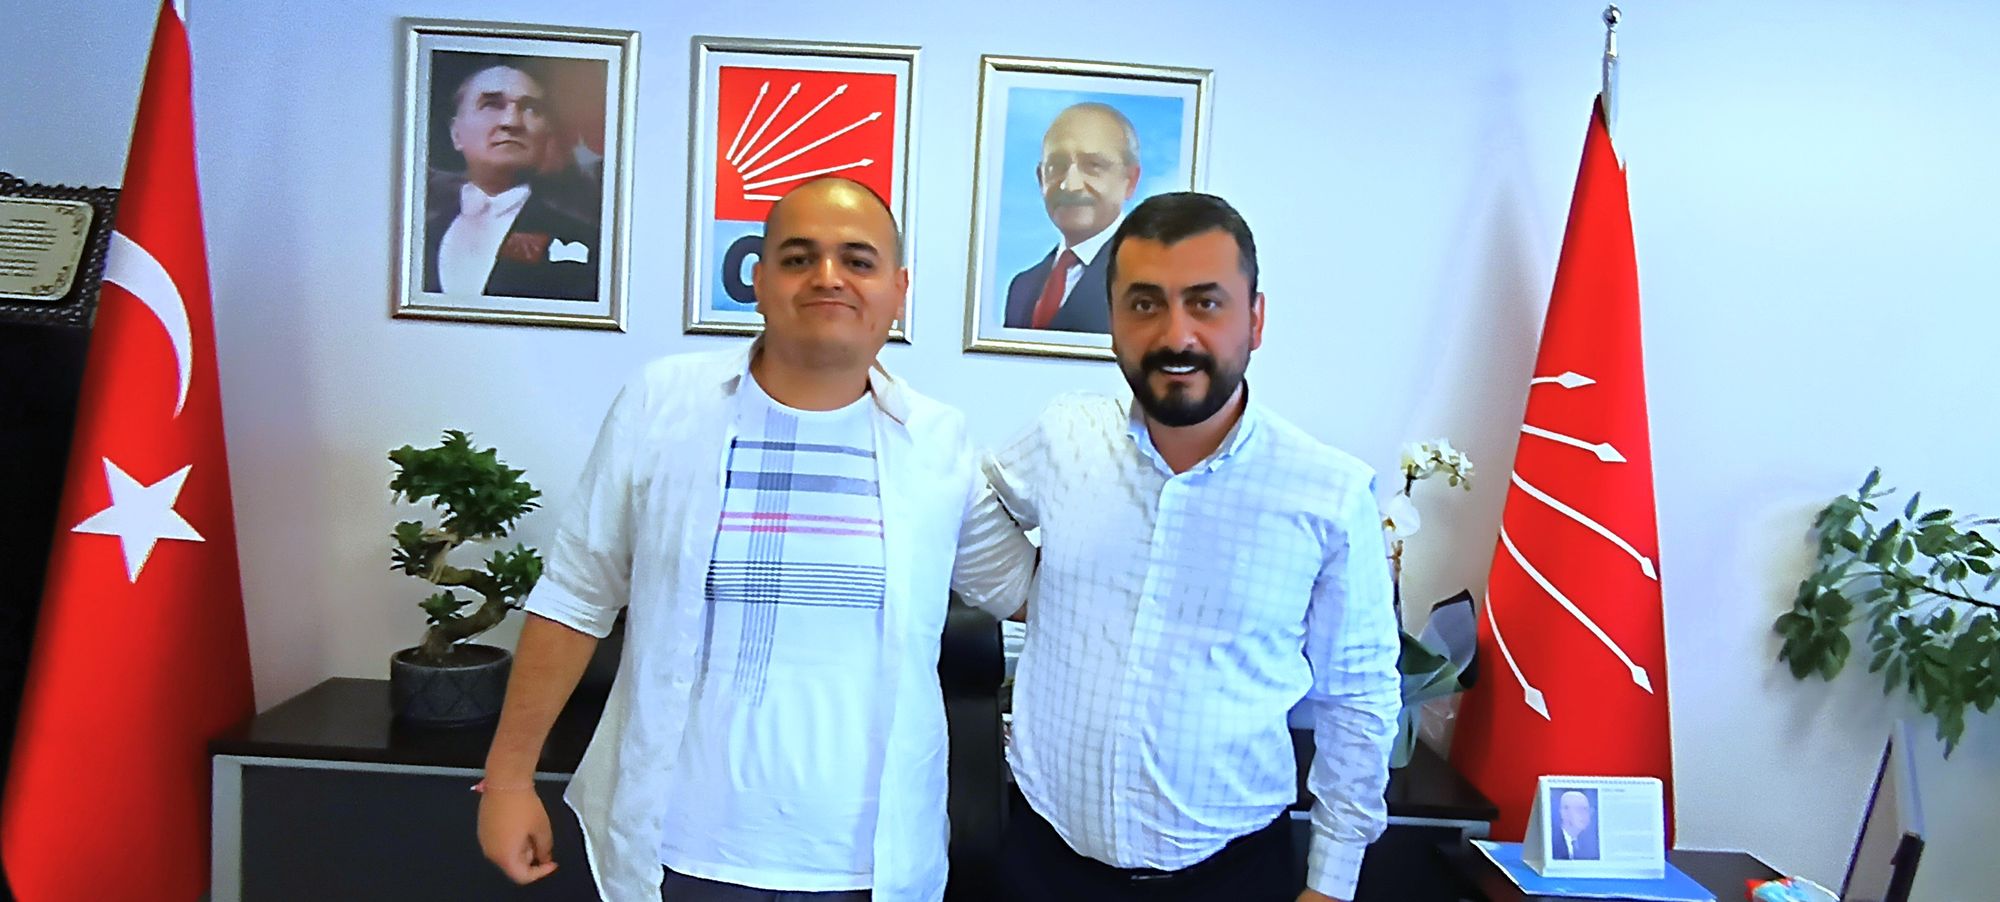 CHP Medya, Planlama ve Sosyal Medya politikalarından sorumlu Genel Başkan Yardımcısı Sayın Eren Erdem ile CHP Genel Merkezde